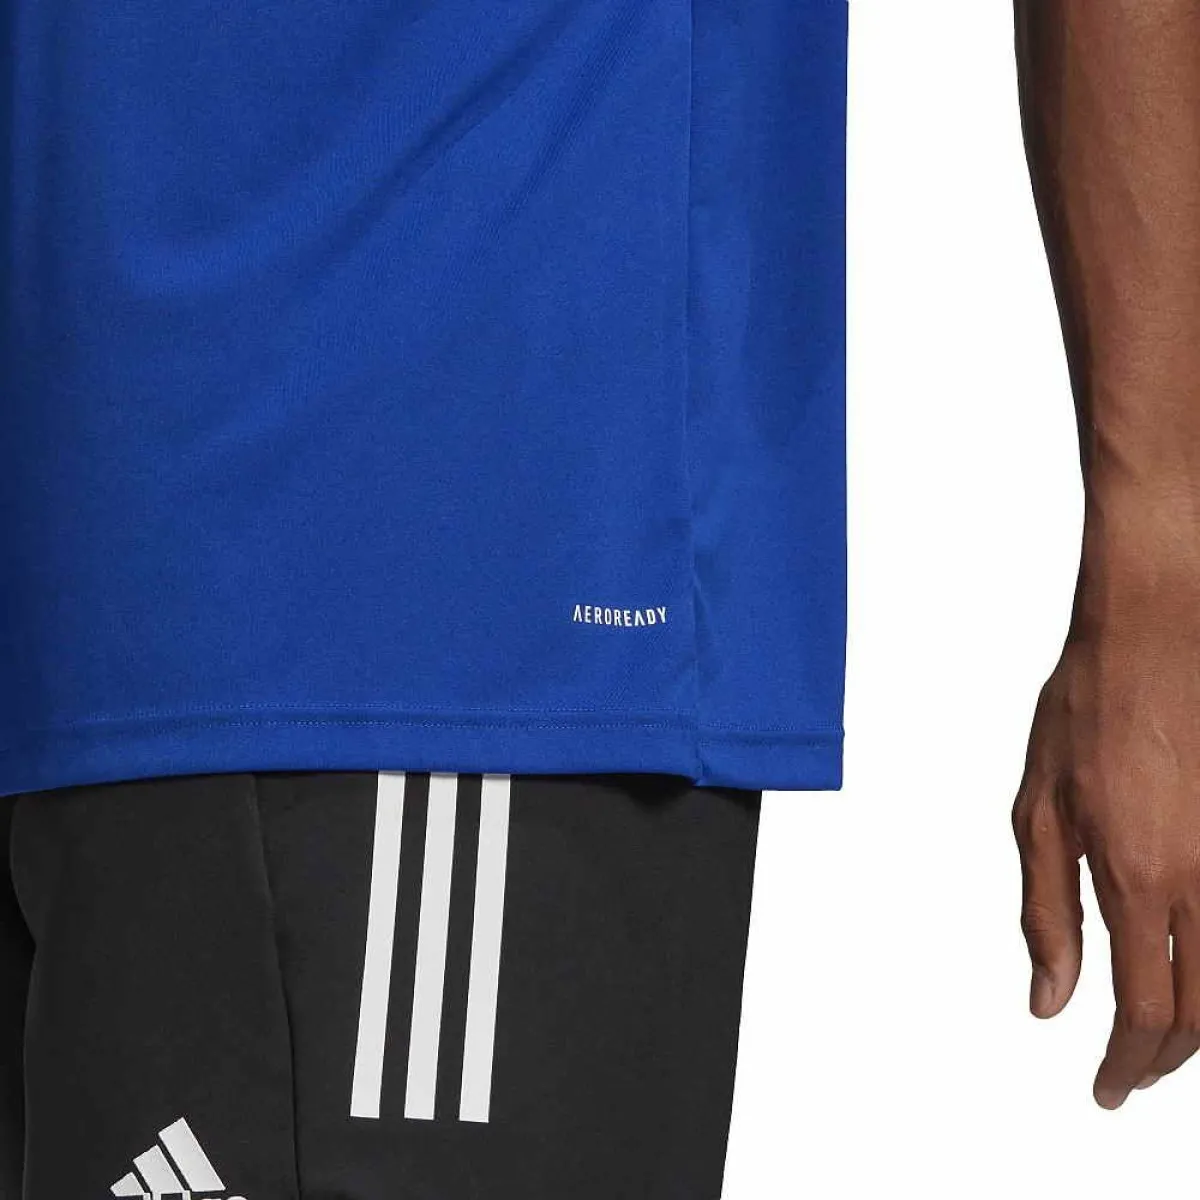 adidas Poloshirt Squadra 21 blau/weiß